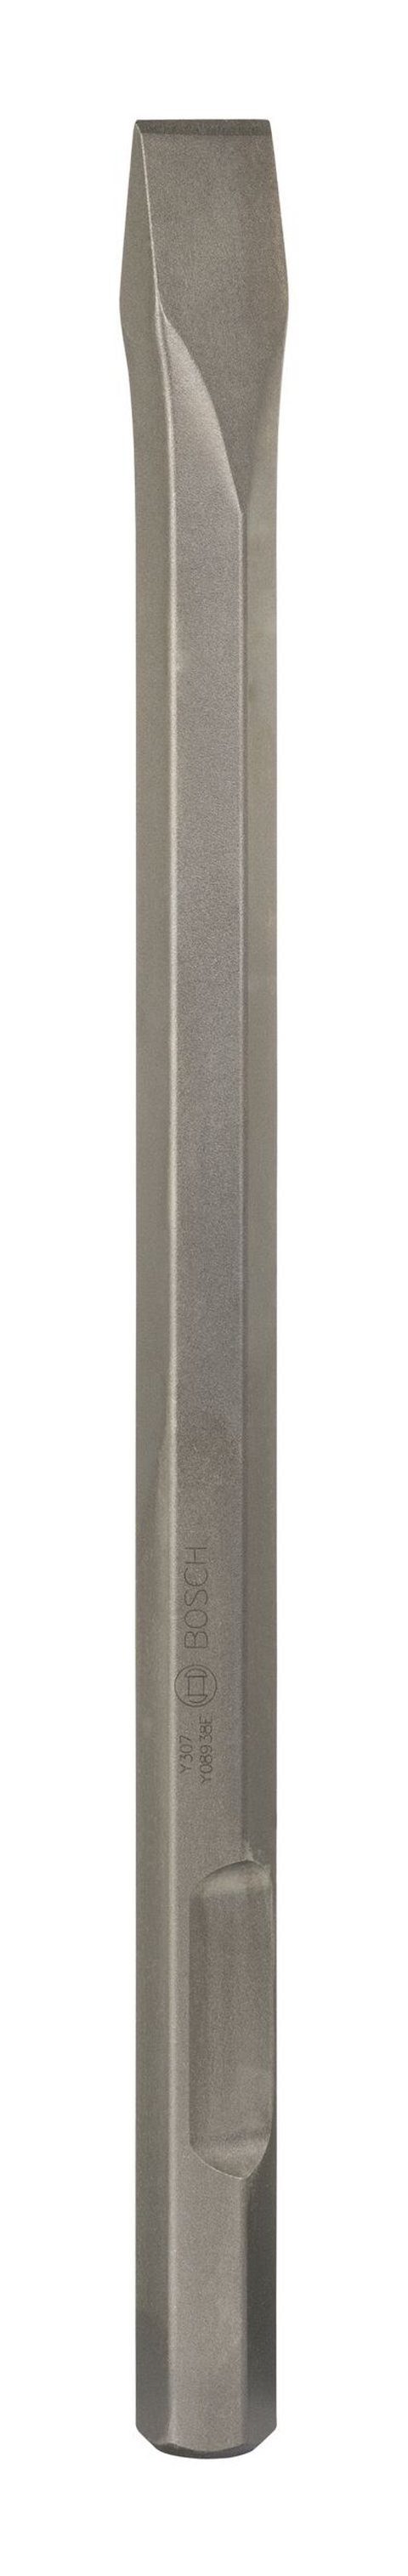 BOSCH Steinbohrer, Flachmeißel mit mm 520 36 - x 28-mm-Sechskantaufnahme